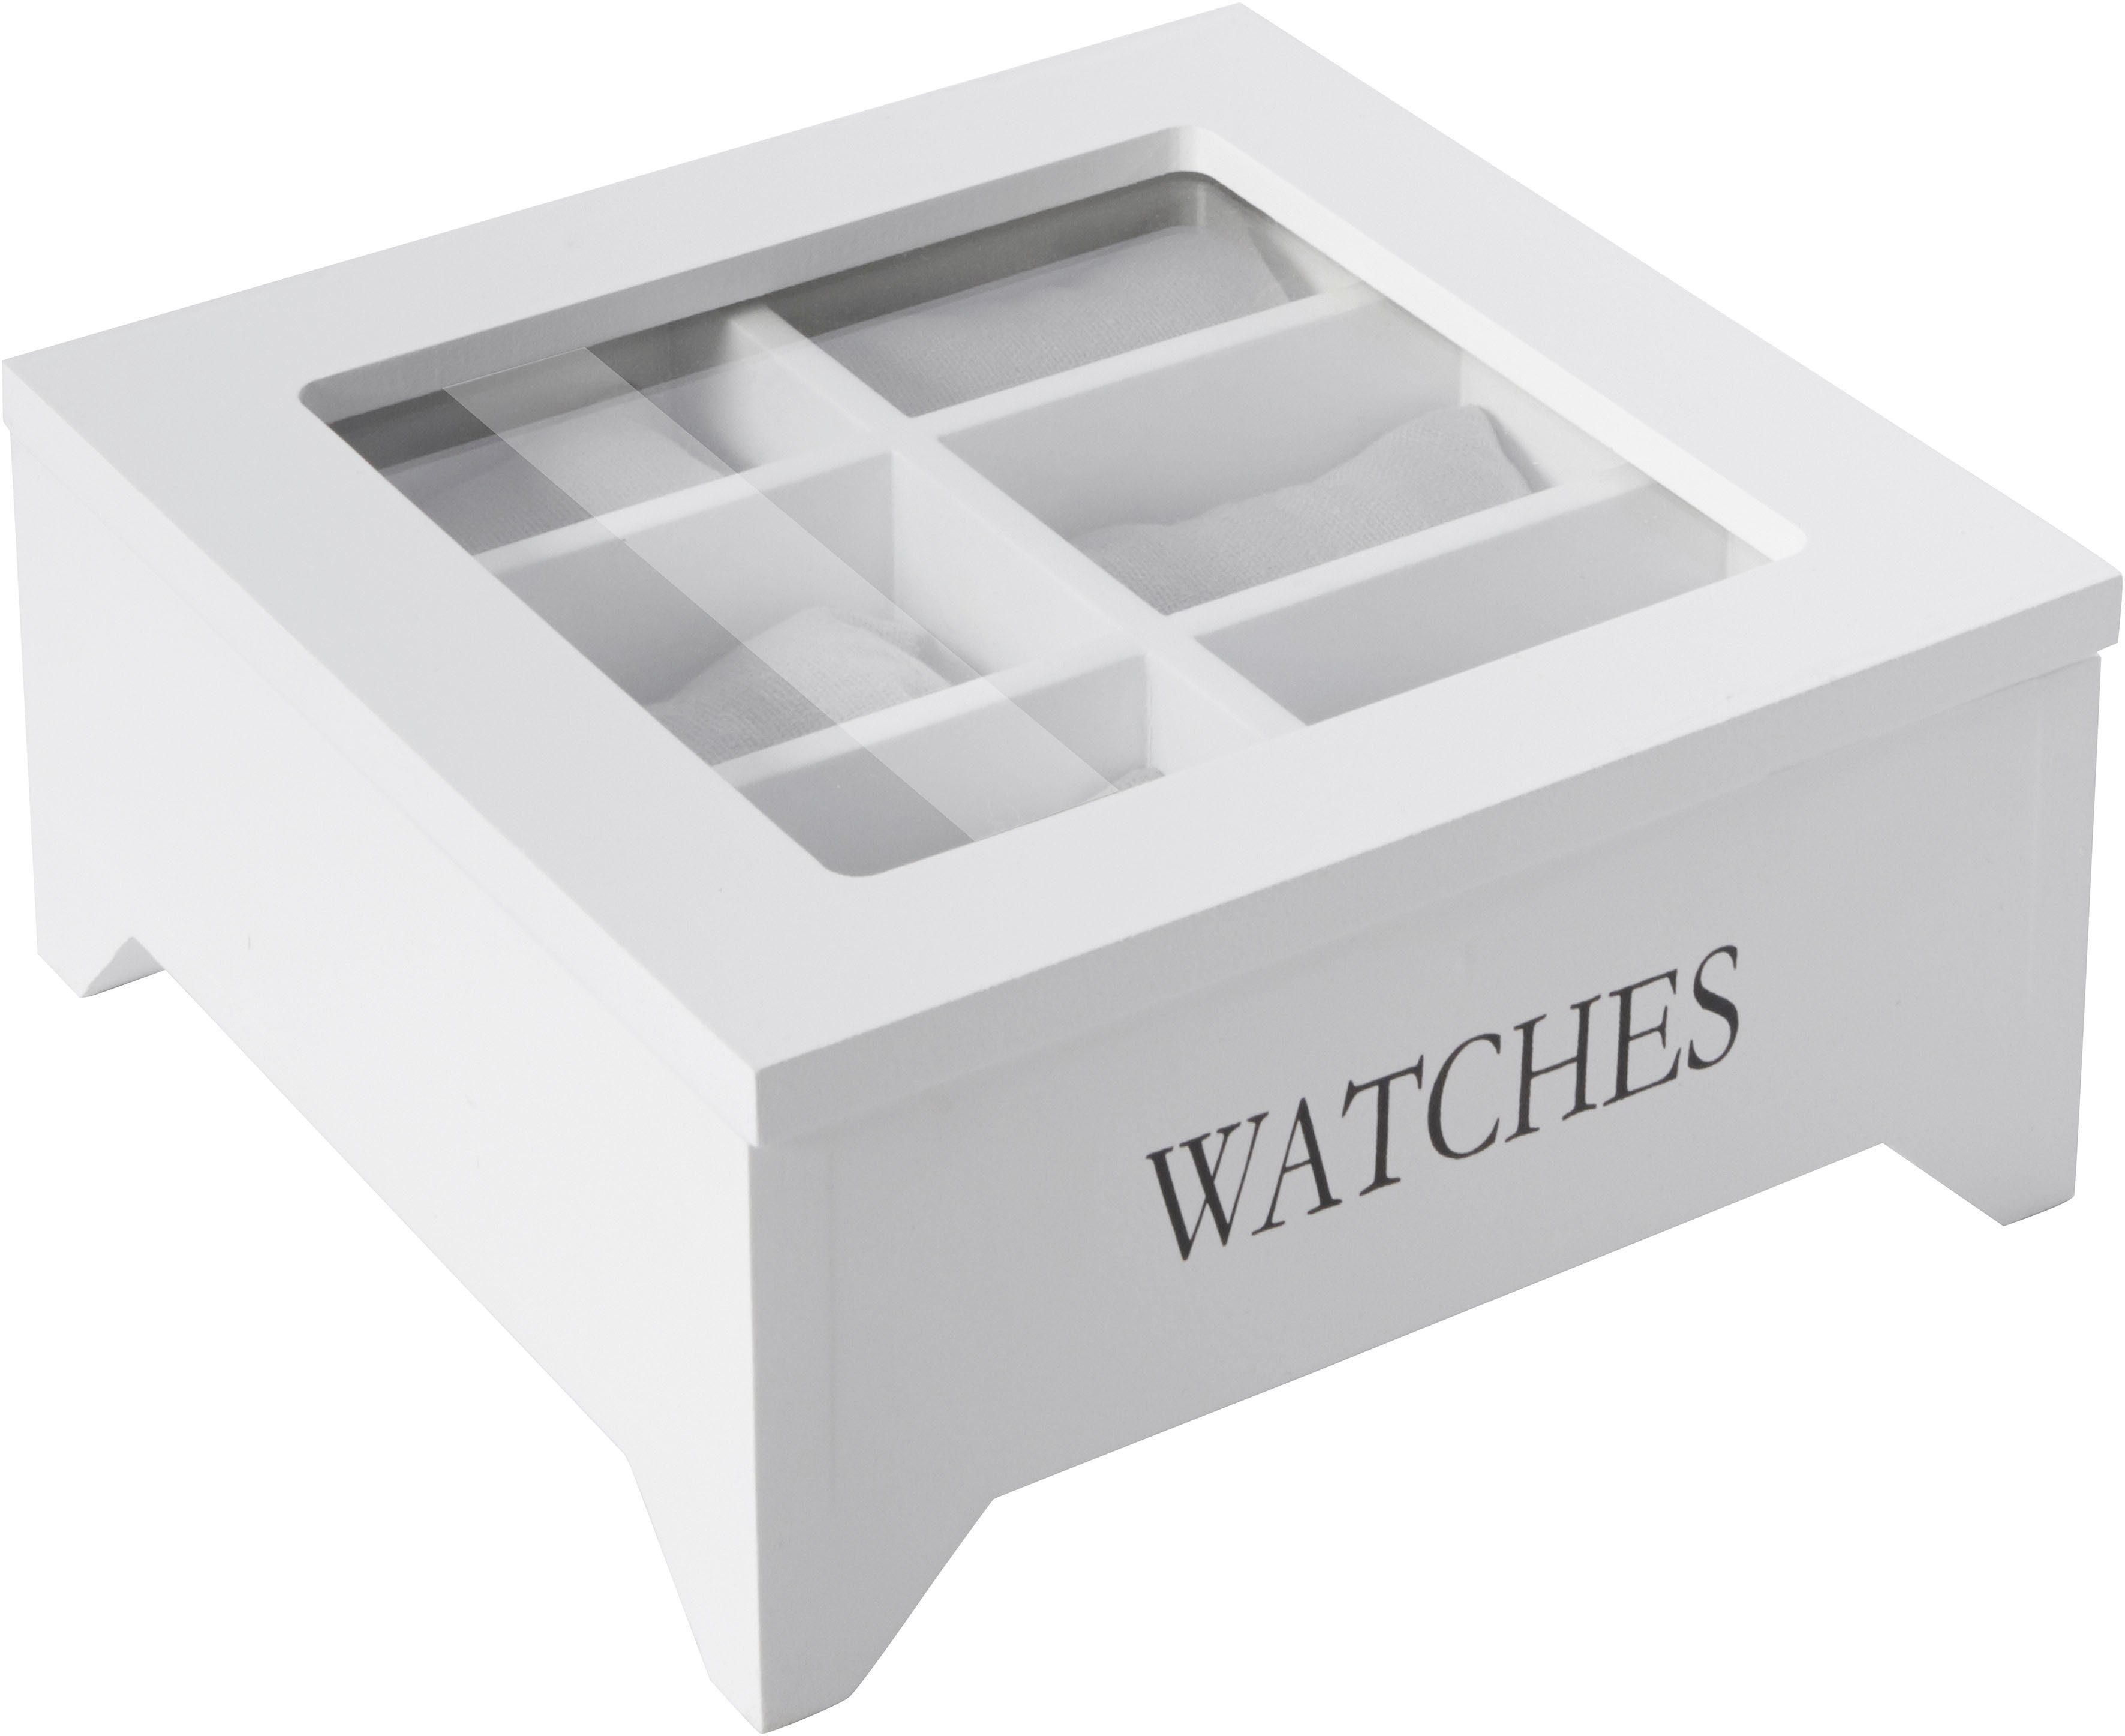 Home affaire Uhrenbox »WATCHES« online kaufen | OTTO